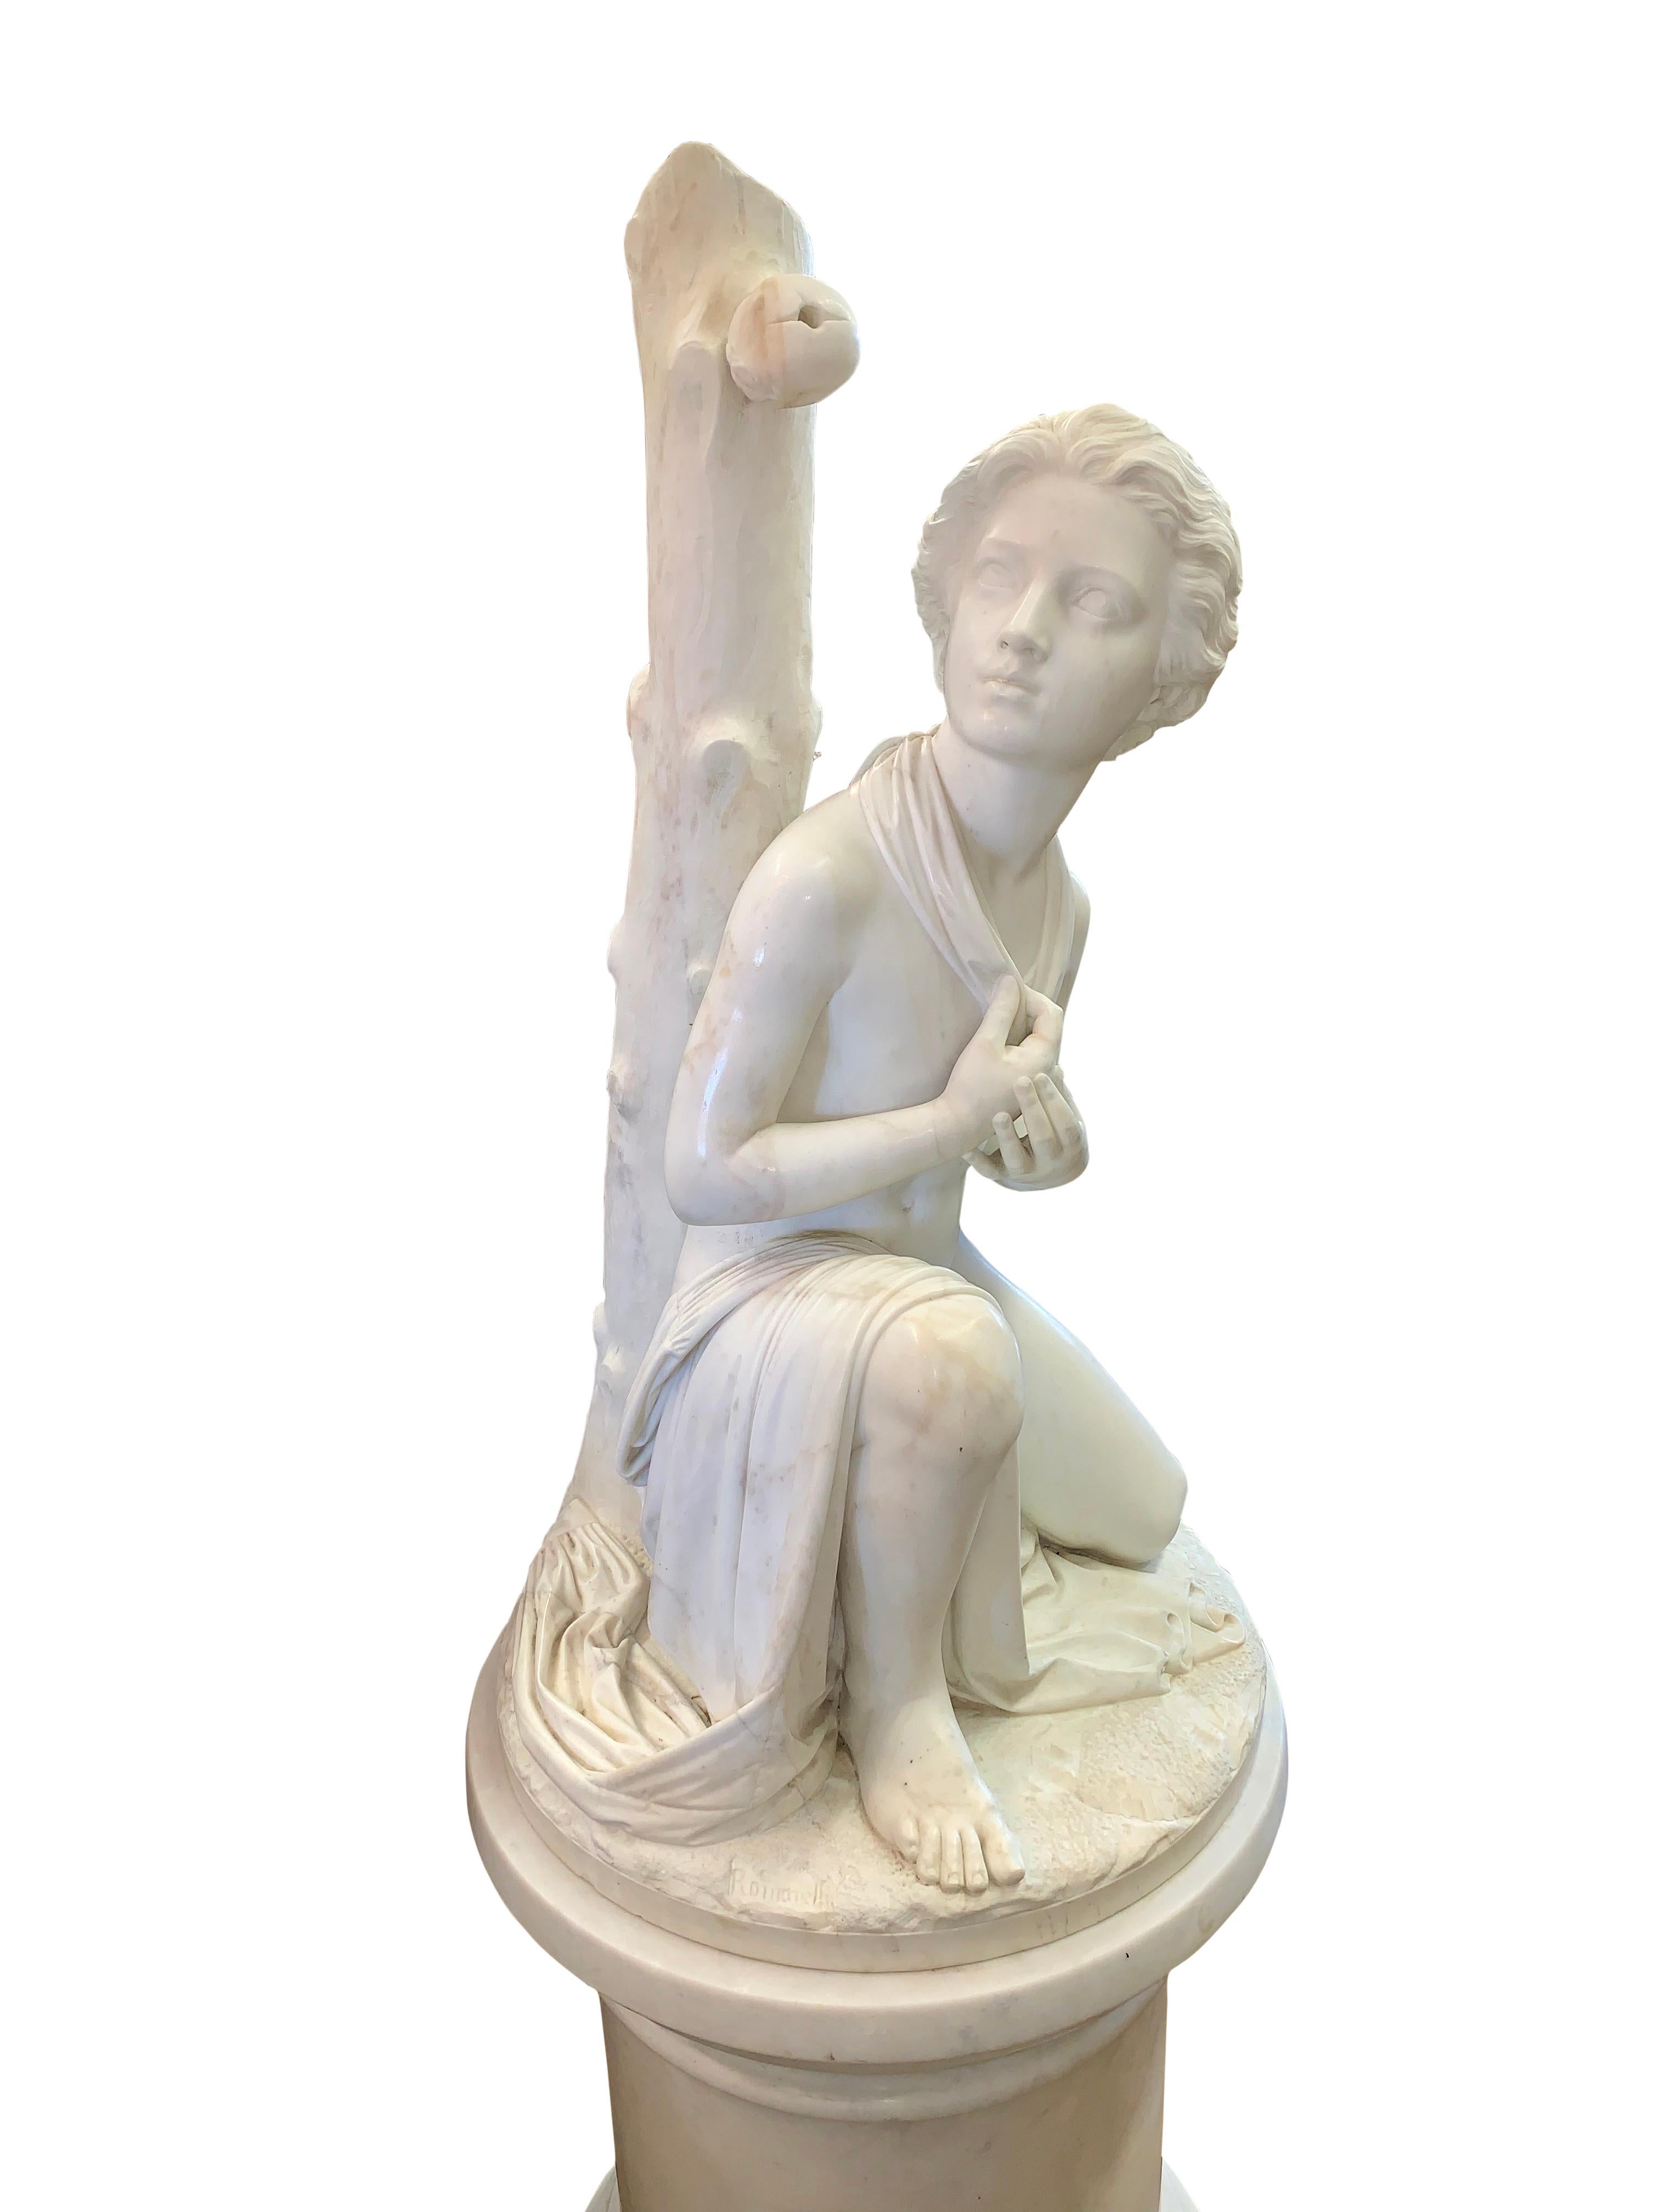 Magnifique figure italienne en marbre sculpté du XIXe siècle représentant le fils de Guillaume Tell agenouillé sous un tronc d'arbre avec une pomme percée au-dessus de sa tête. Surélevé sur un piédestal contemporain en marbre massif.
Par Pasquale